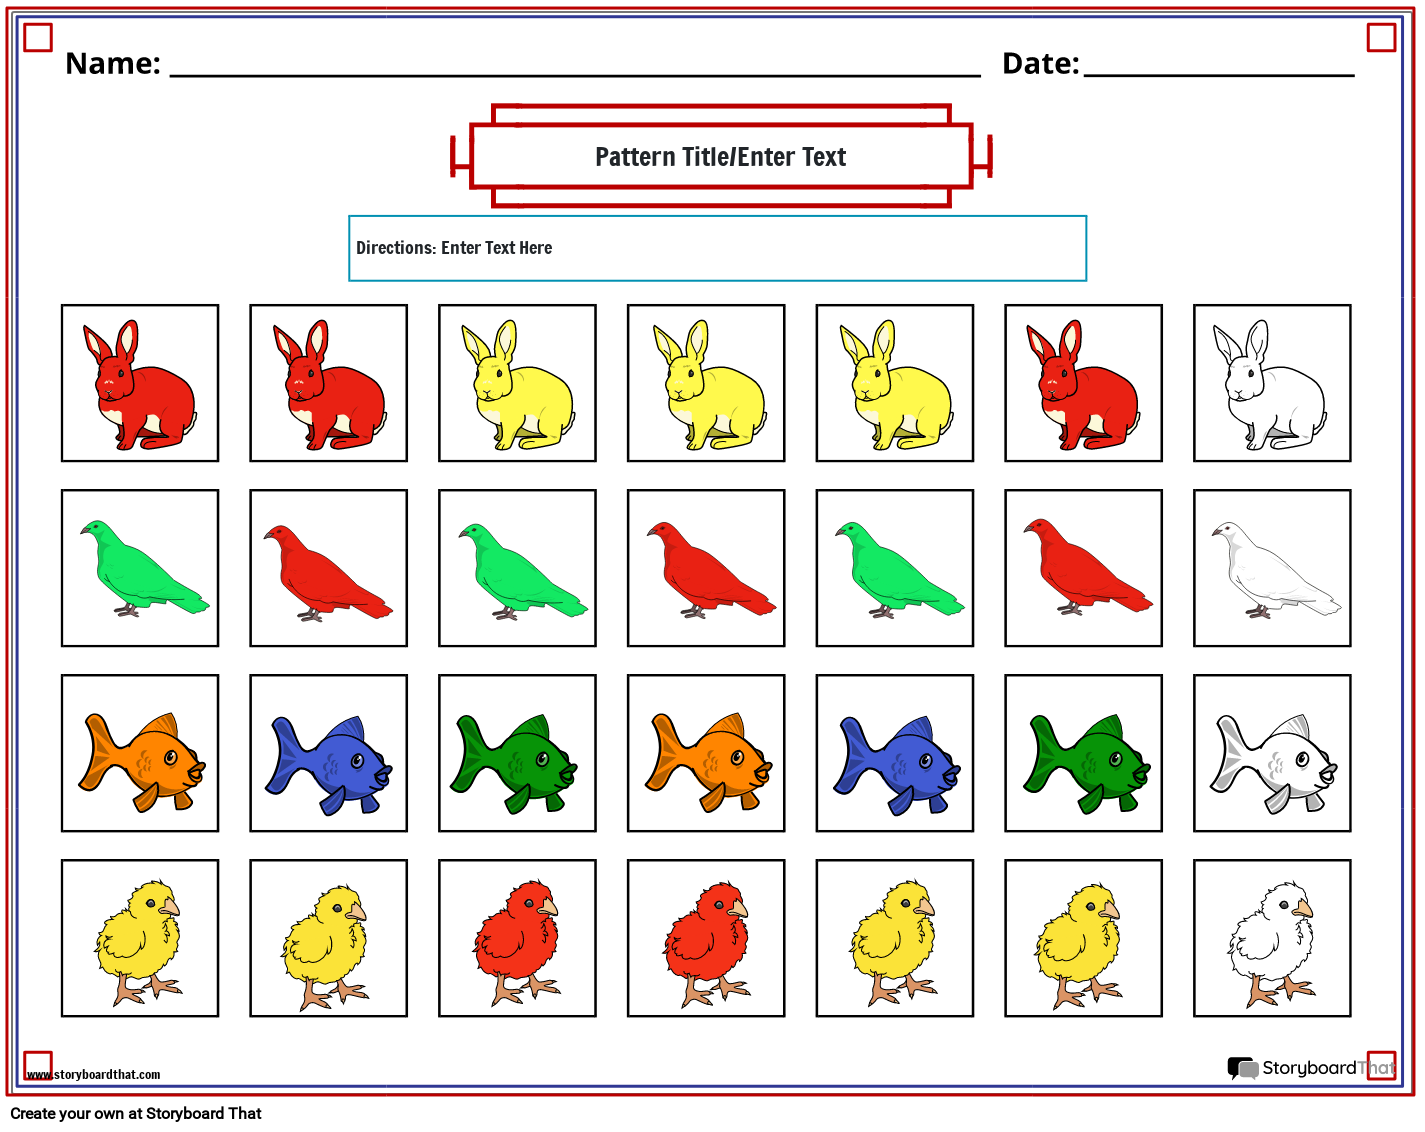 Animal color pattern worksheet